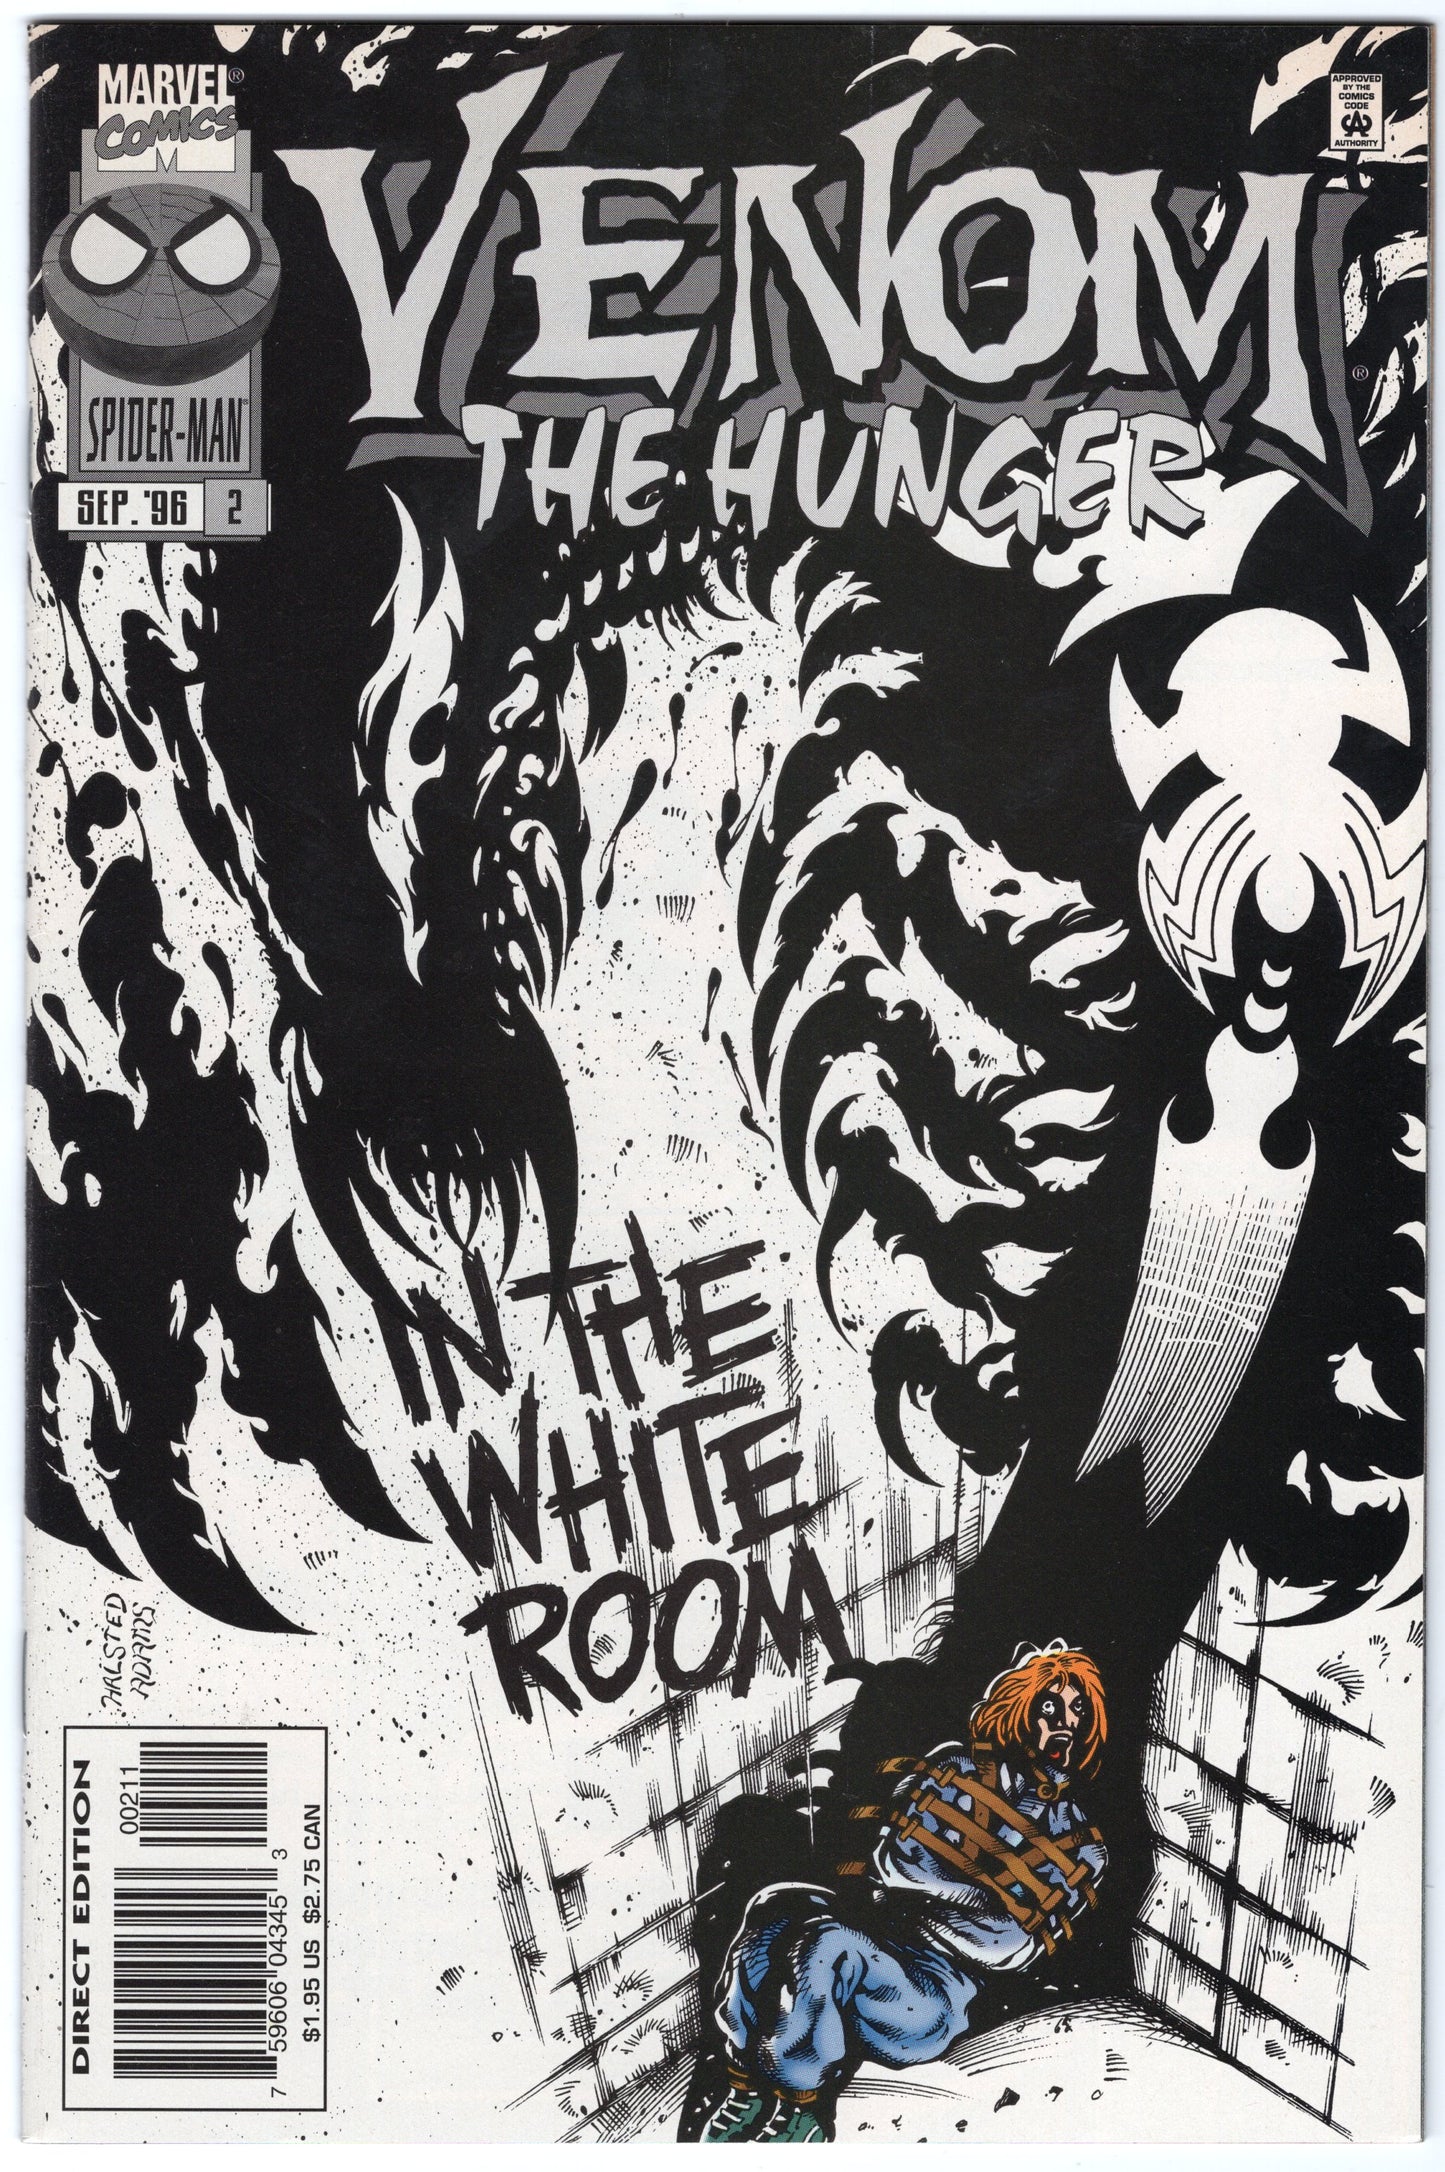 Venom - Issue #2 "The Hunger" (Sept. 1996 - Marvel Comics) NM-